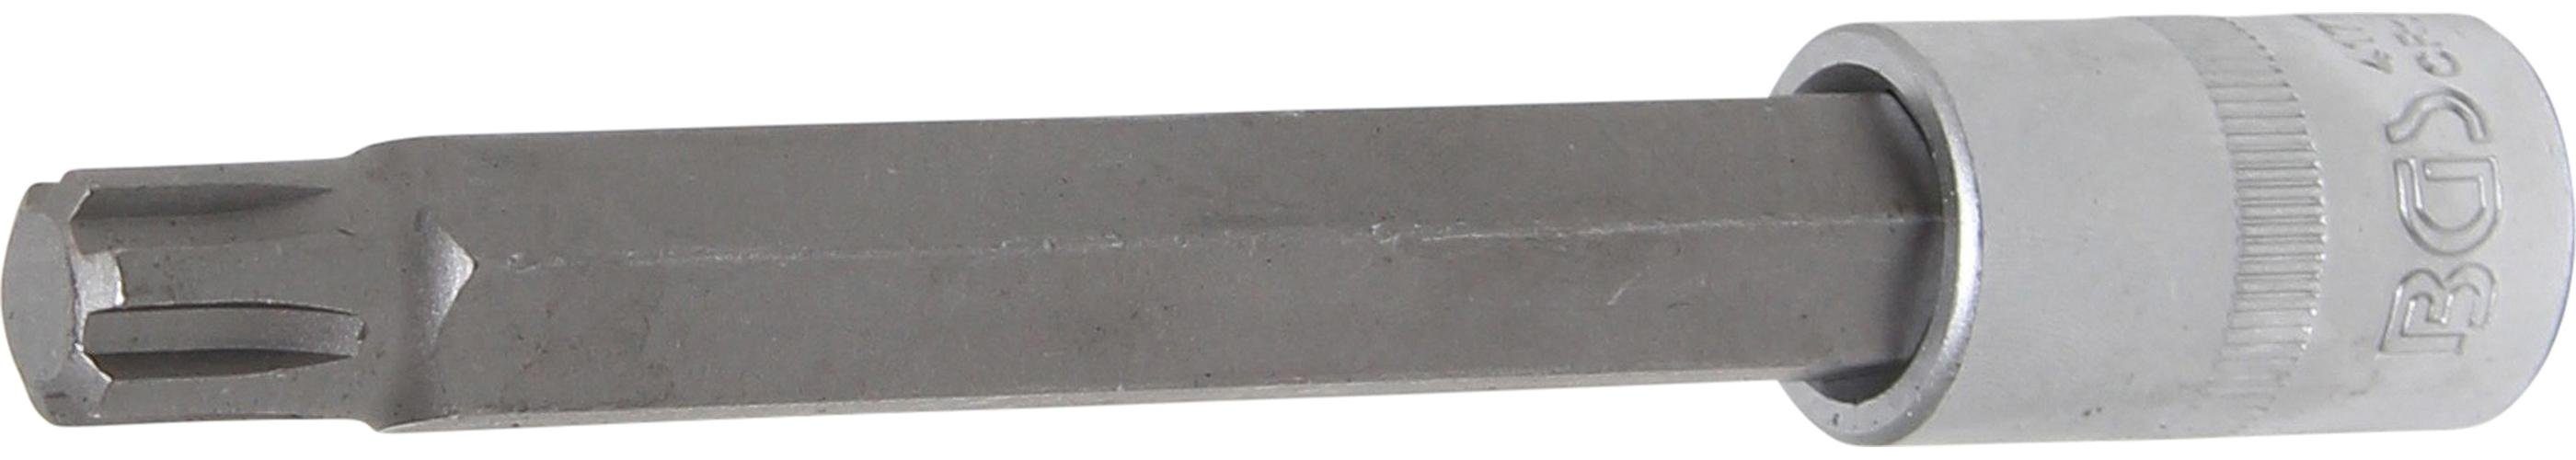 BGS technic Bit-Schraubendreher Bit-Einsatz, Länge 140 mm, Antrieb Innenvierkant 12,5 mm (1/2), Keil-Profil (für RIBE) M13